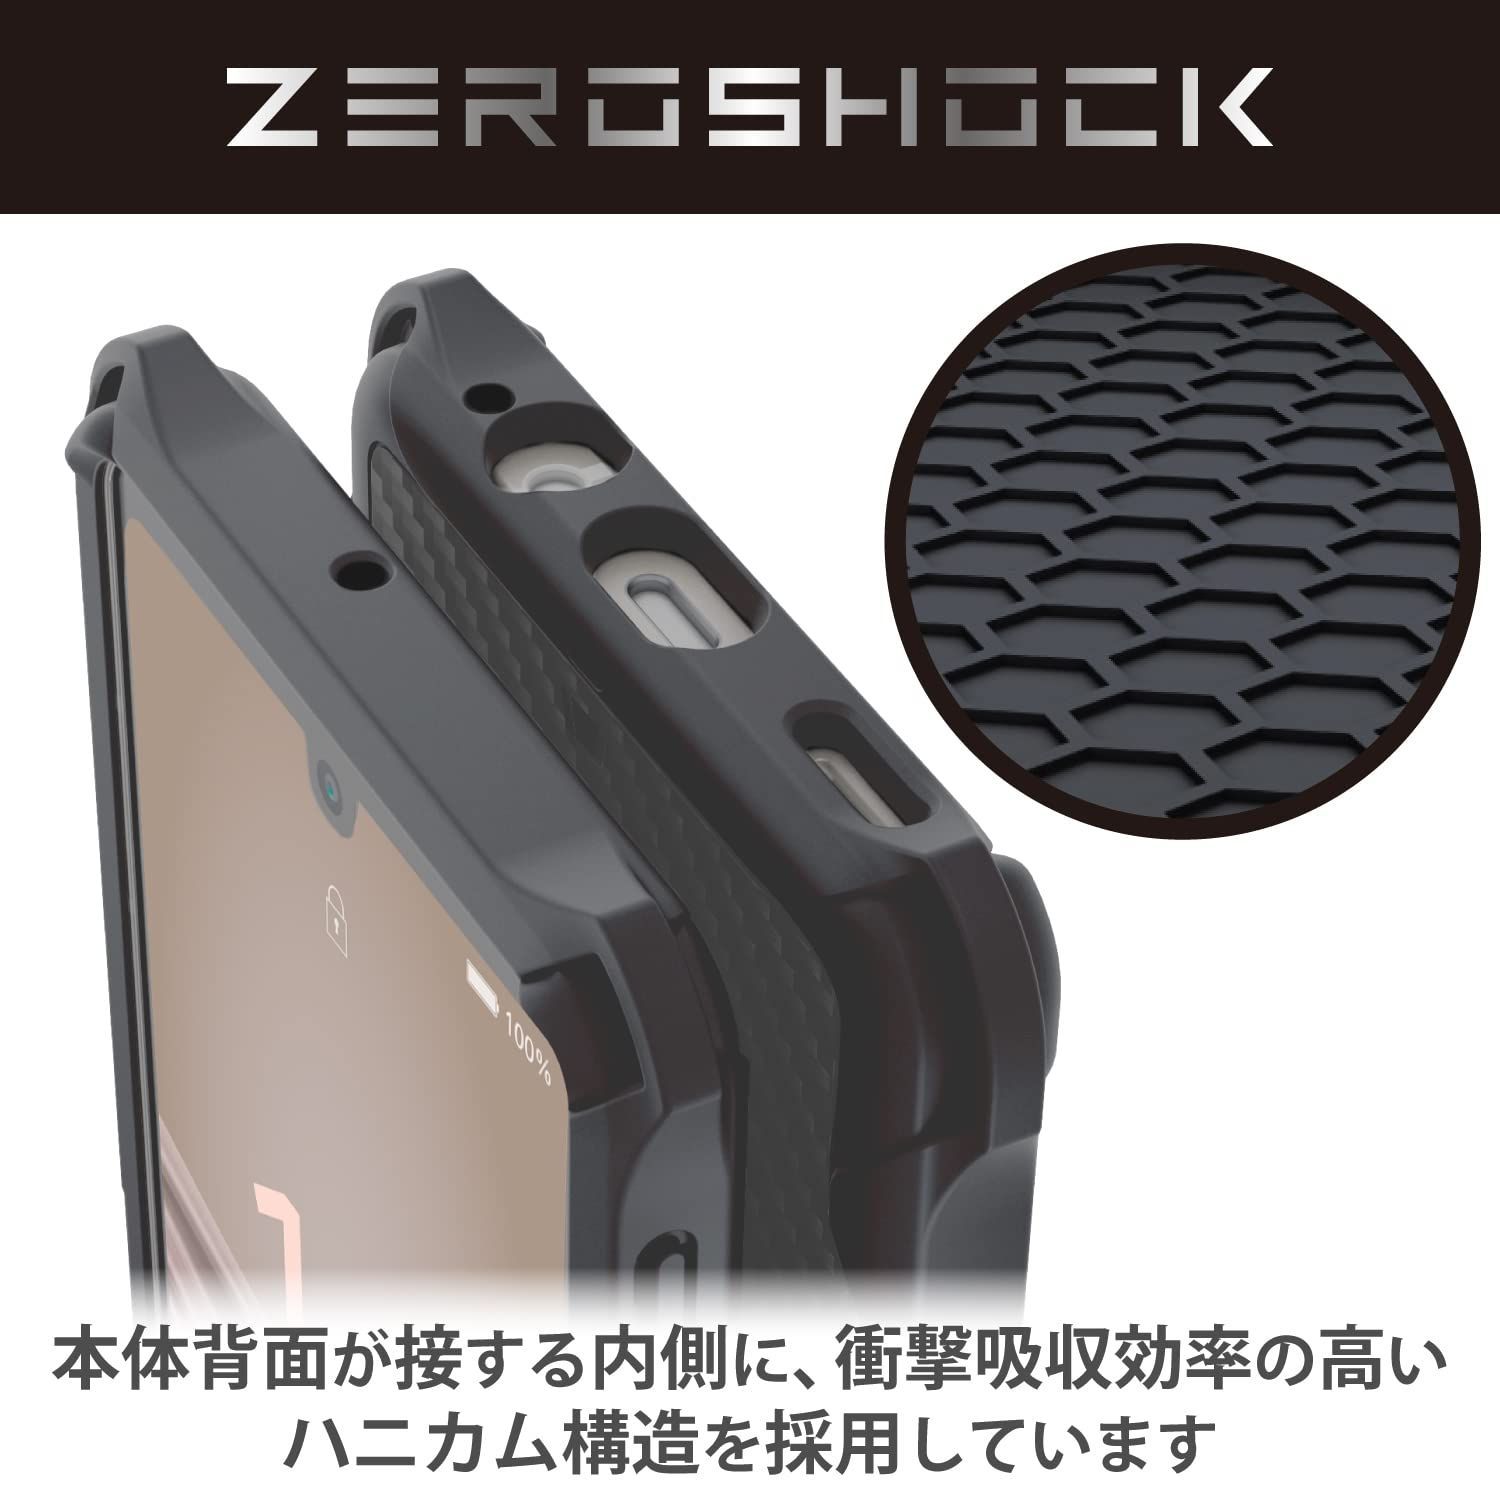 特価商品】TPU ソフト ZEROSHOCK 衝撃吸収 四つ角ダンパー 耐衝撃 